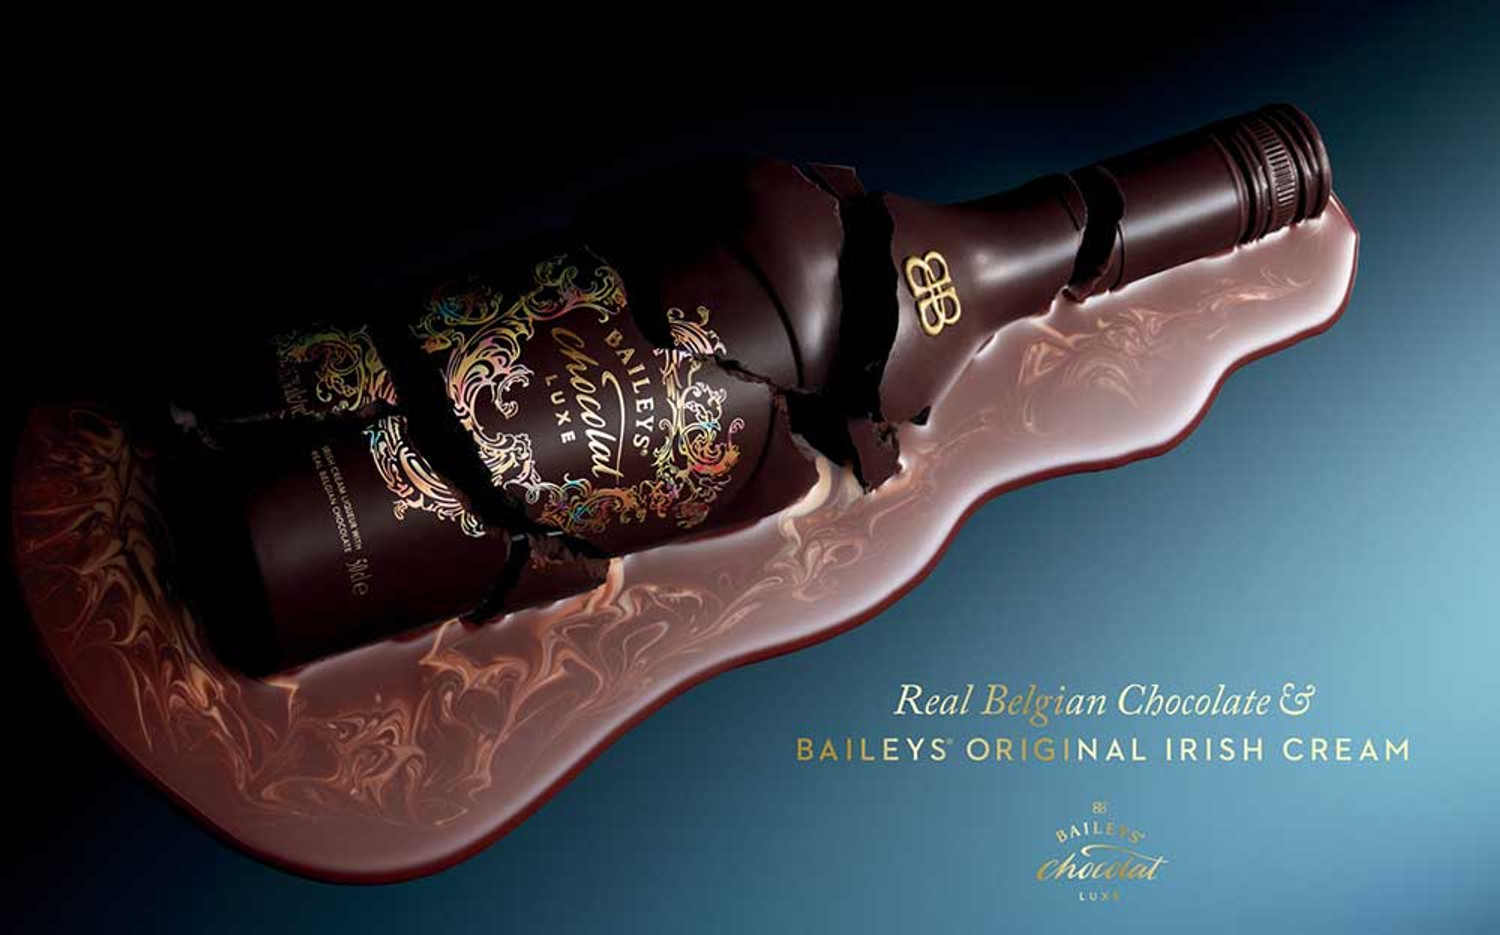 Baileys Chocolat Luxe 500ml